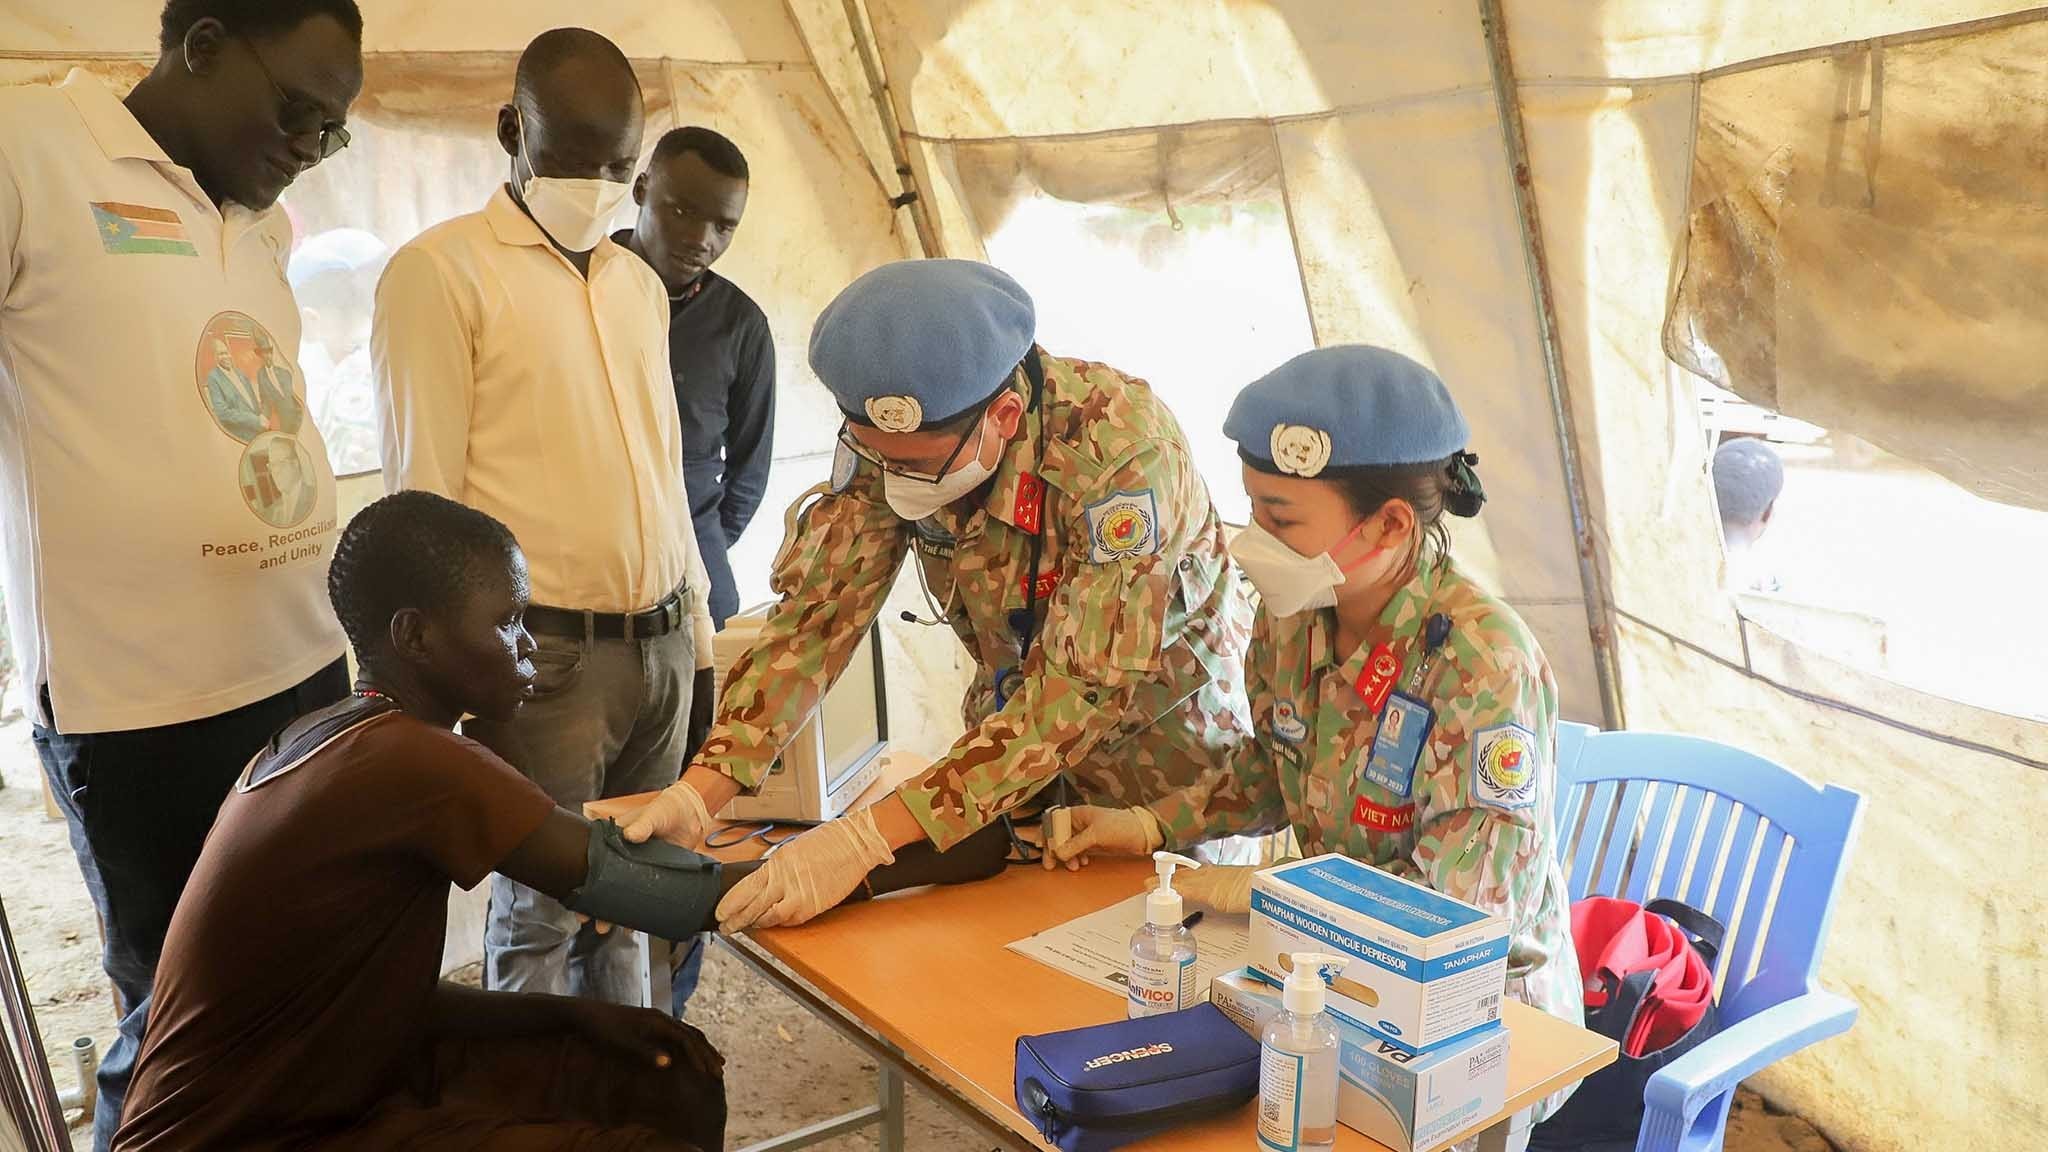 Bác sĩ mũ nồi xanh Việt Nam khám bệnh, cấp phát thuốc miễn phí cho hơn 200 người dân Nam Sudan